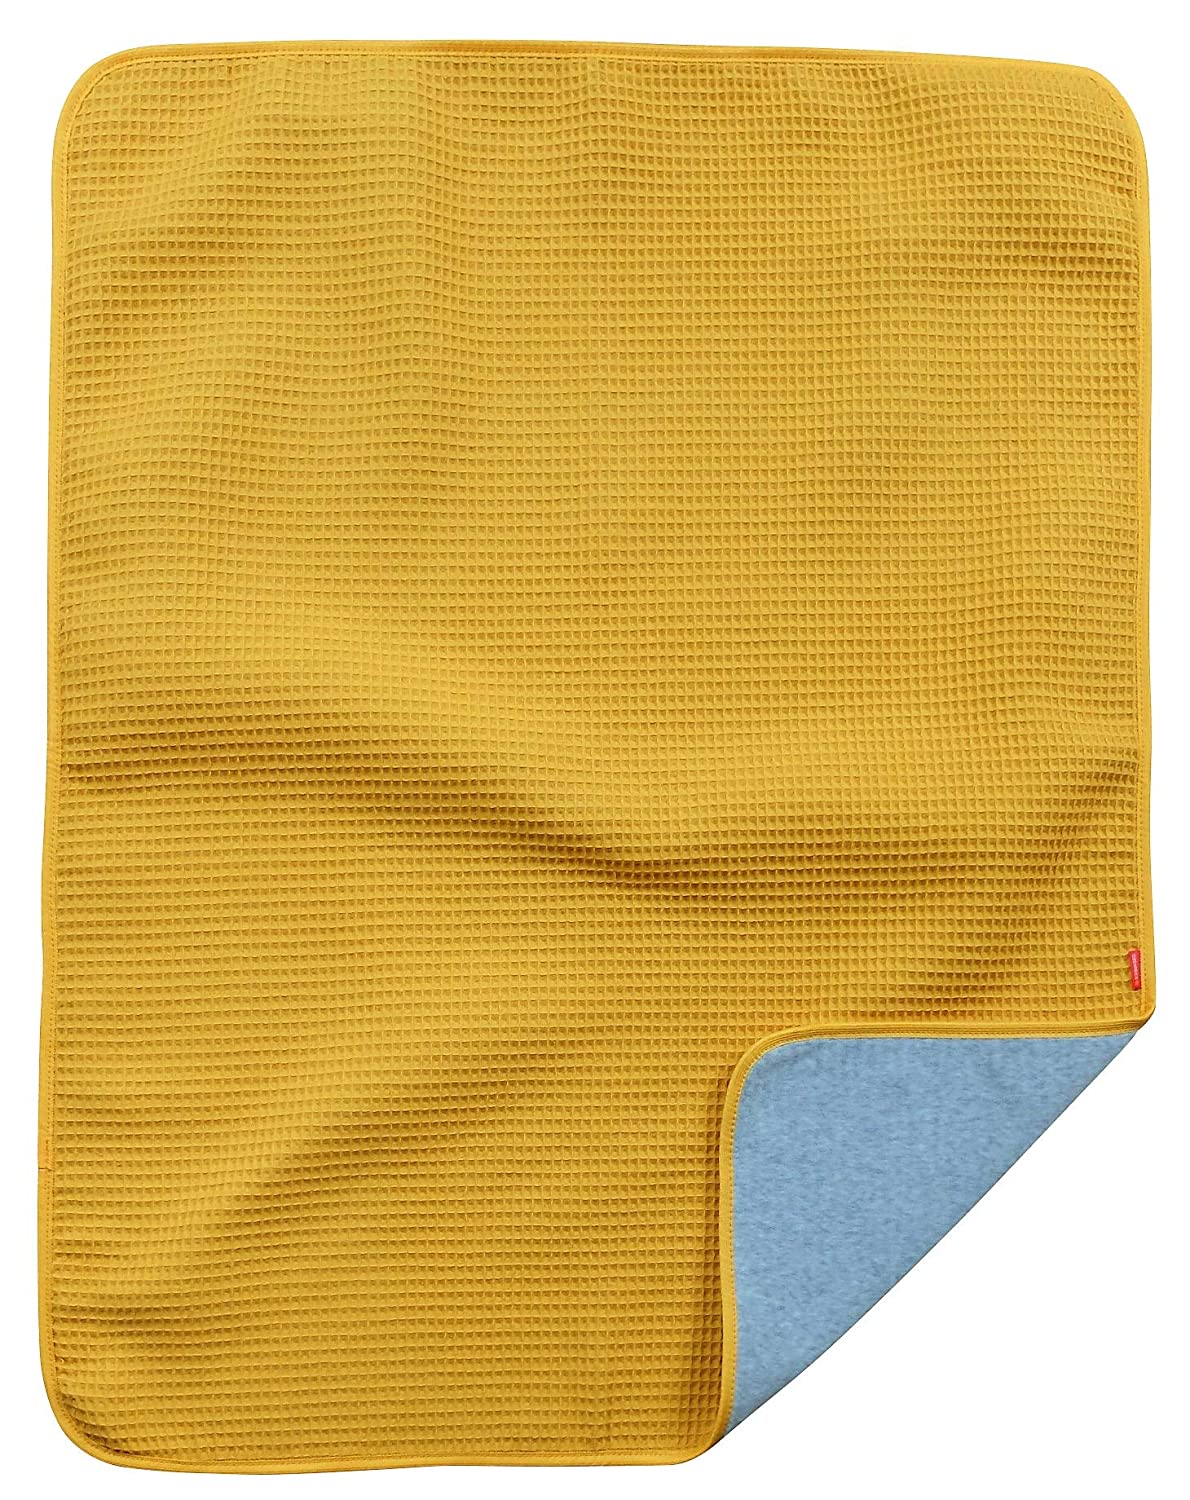 Ideenreich 2567 IDEENREICH 2567 Baby Blanket Mustard 70 x 90 cm Yellow